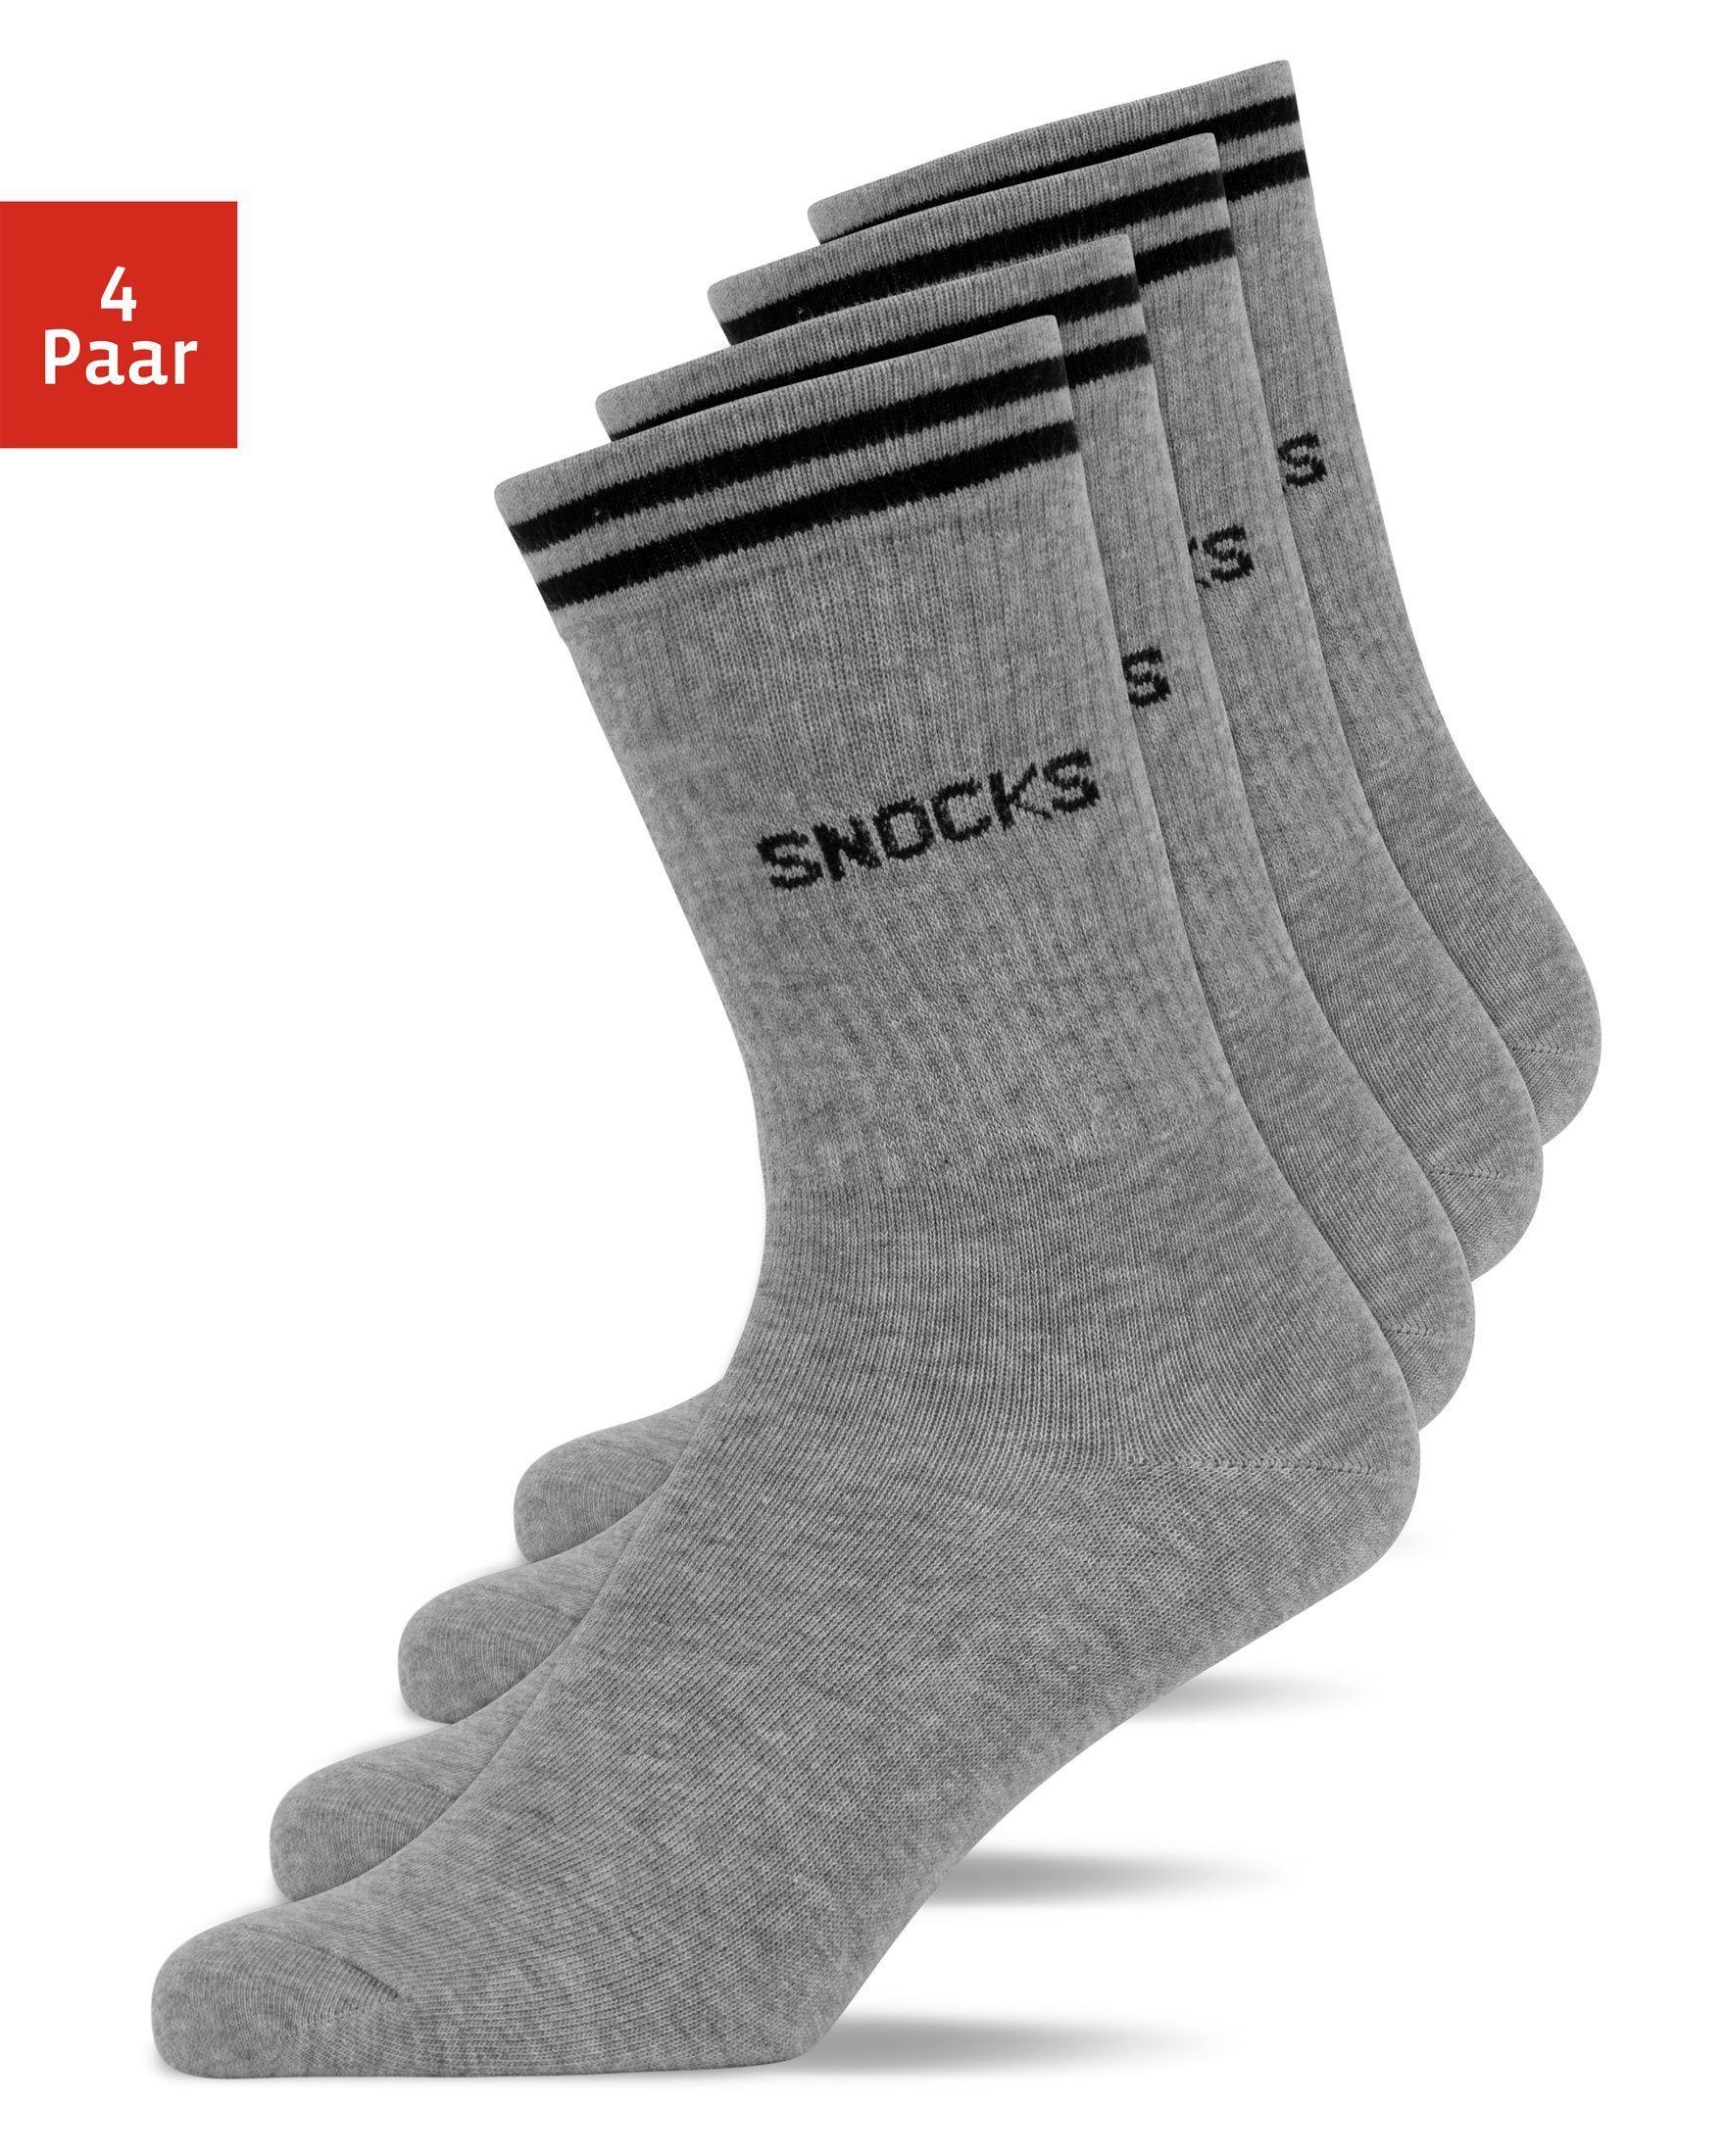 SNOCKS Sportsocken Hohe Tennissocken mit Streifen für Damen & Herren (4-Paar) aus Bio-Baumwolle, stylish für jedes Outfit Grau